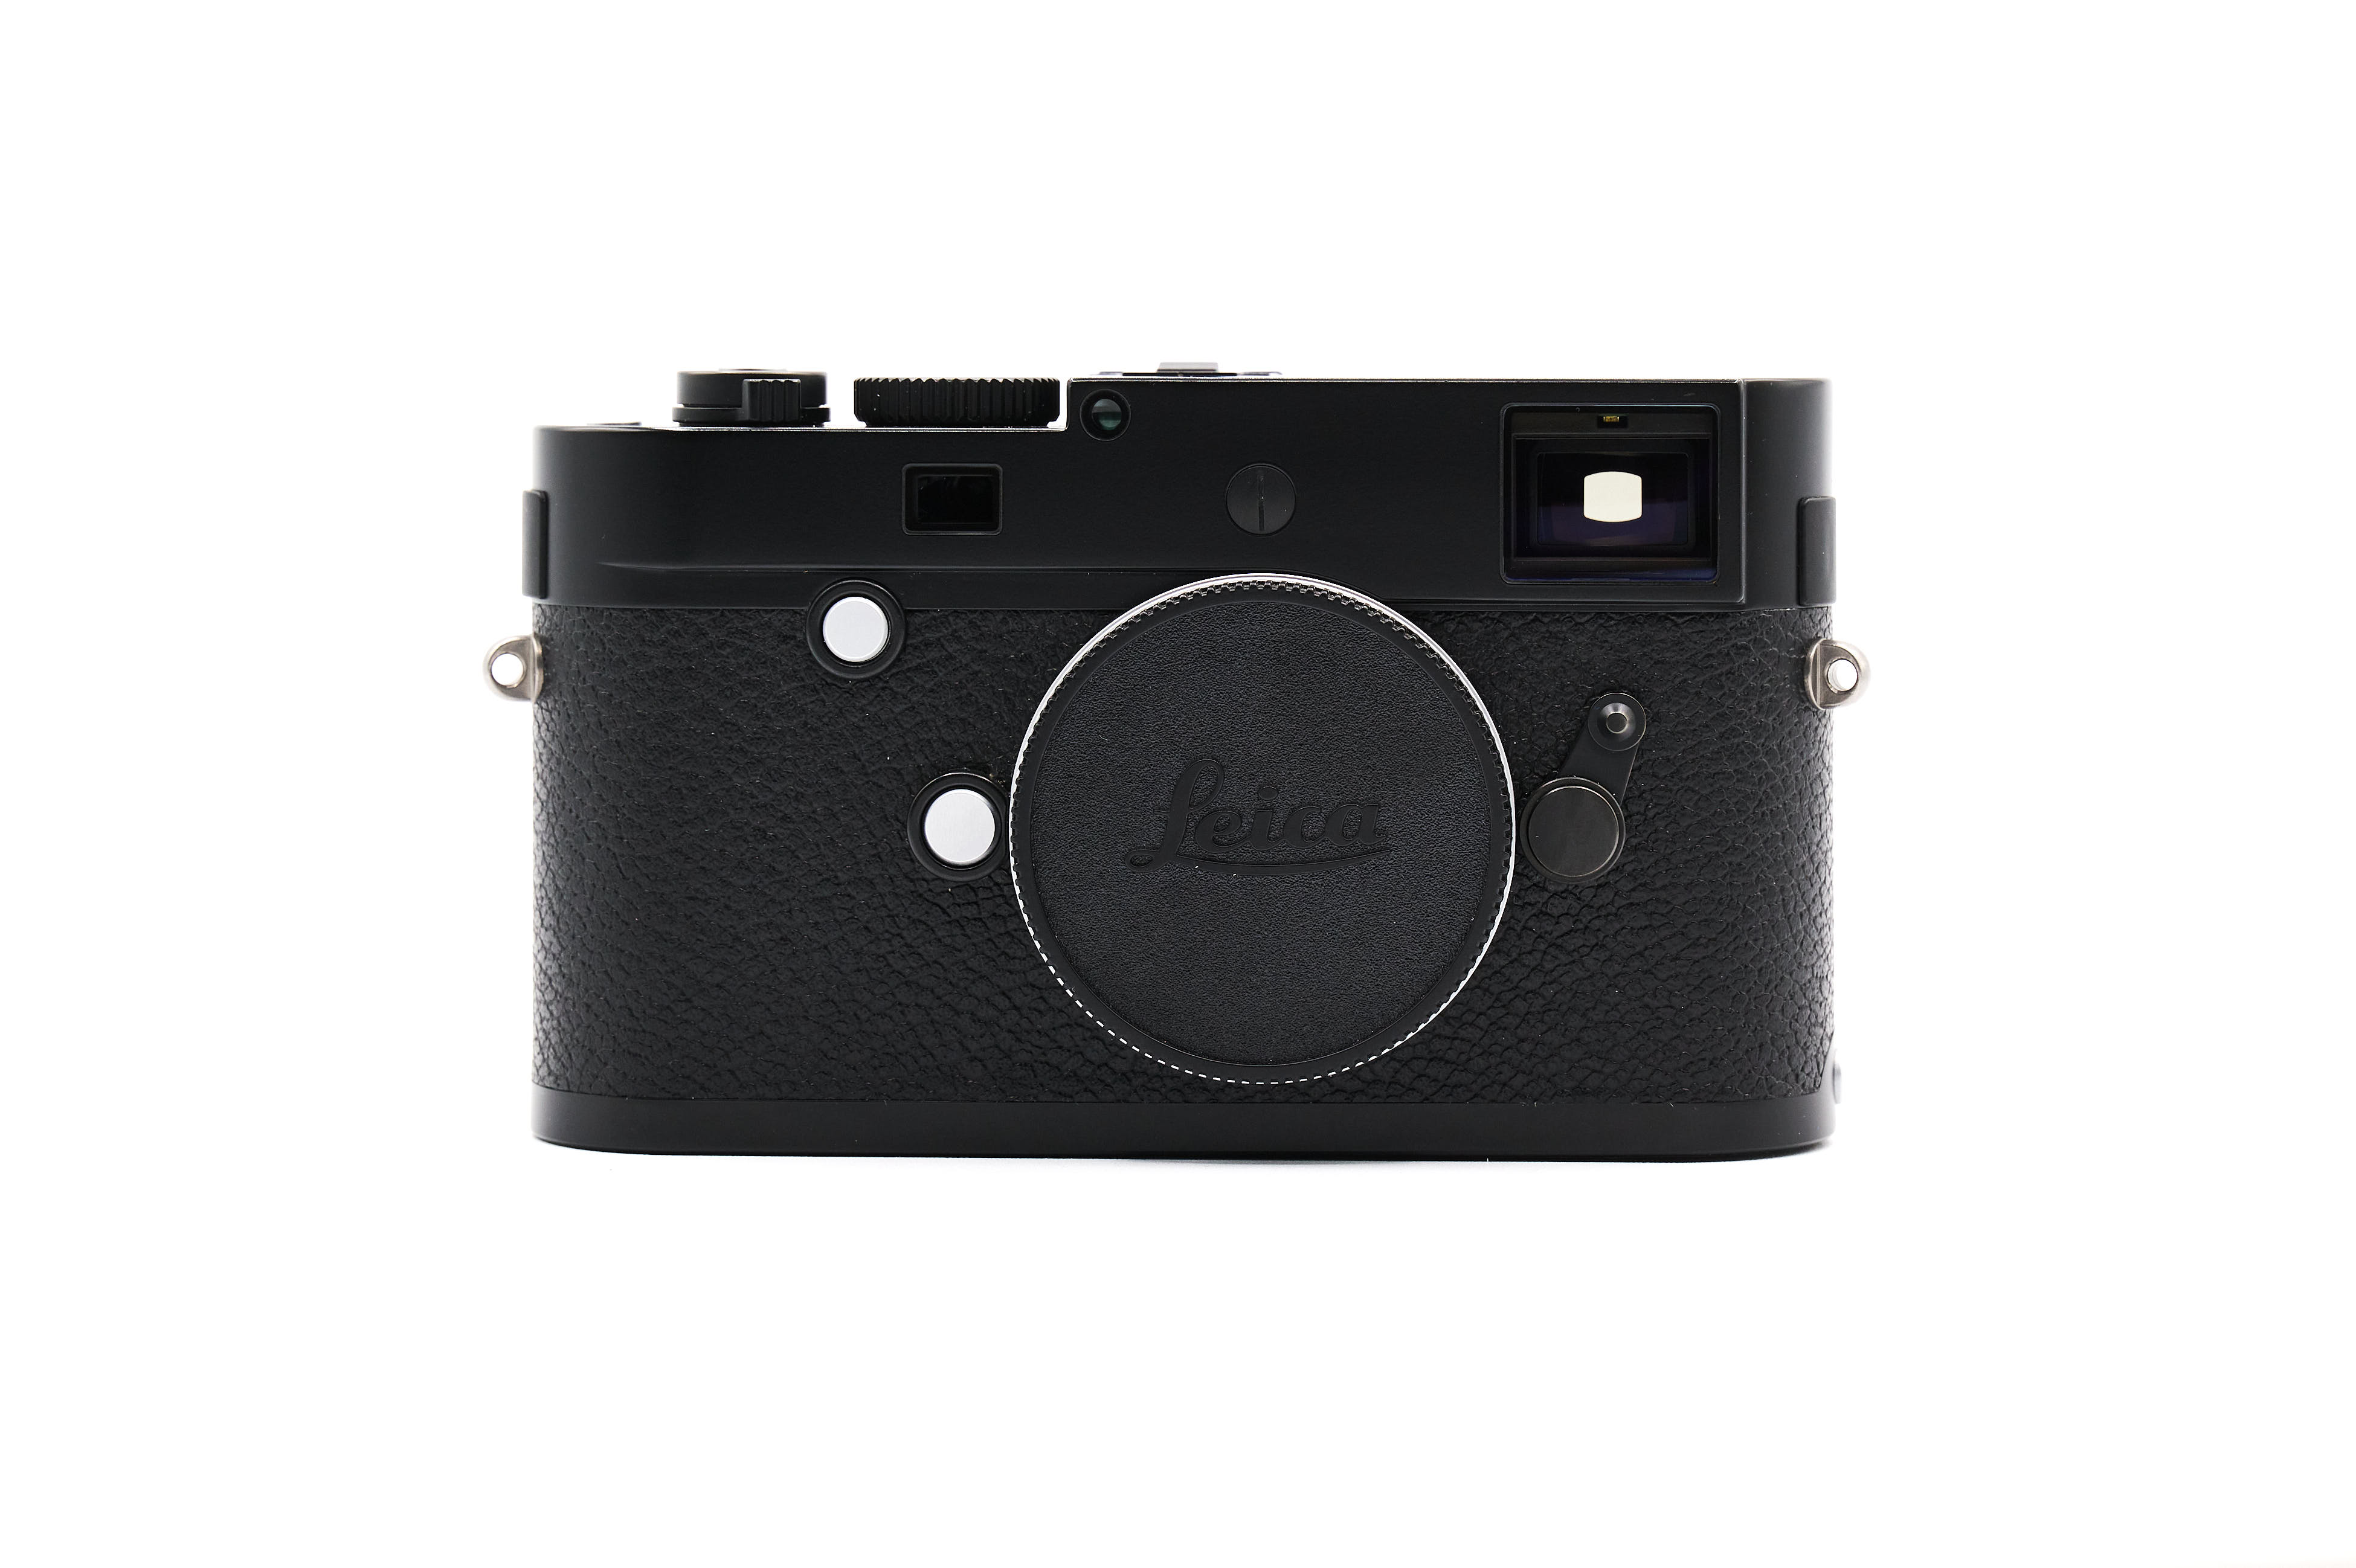 Leica M-P (Typ 240) 10773